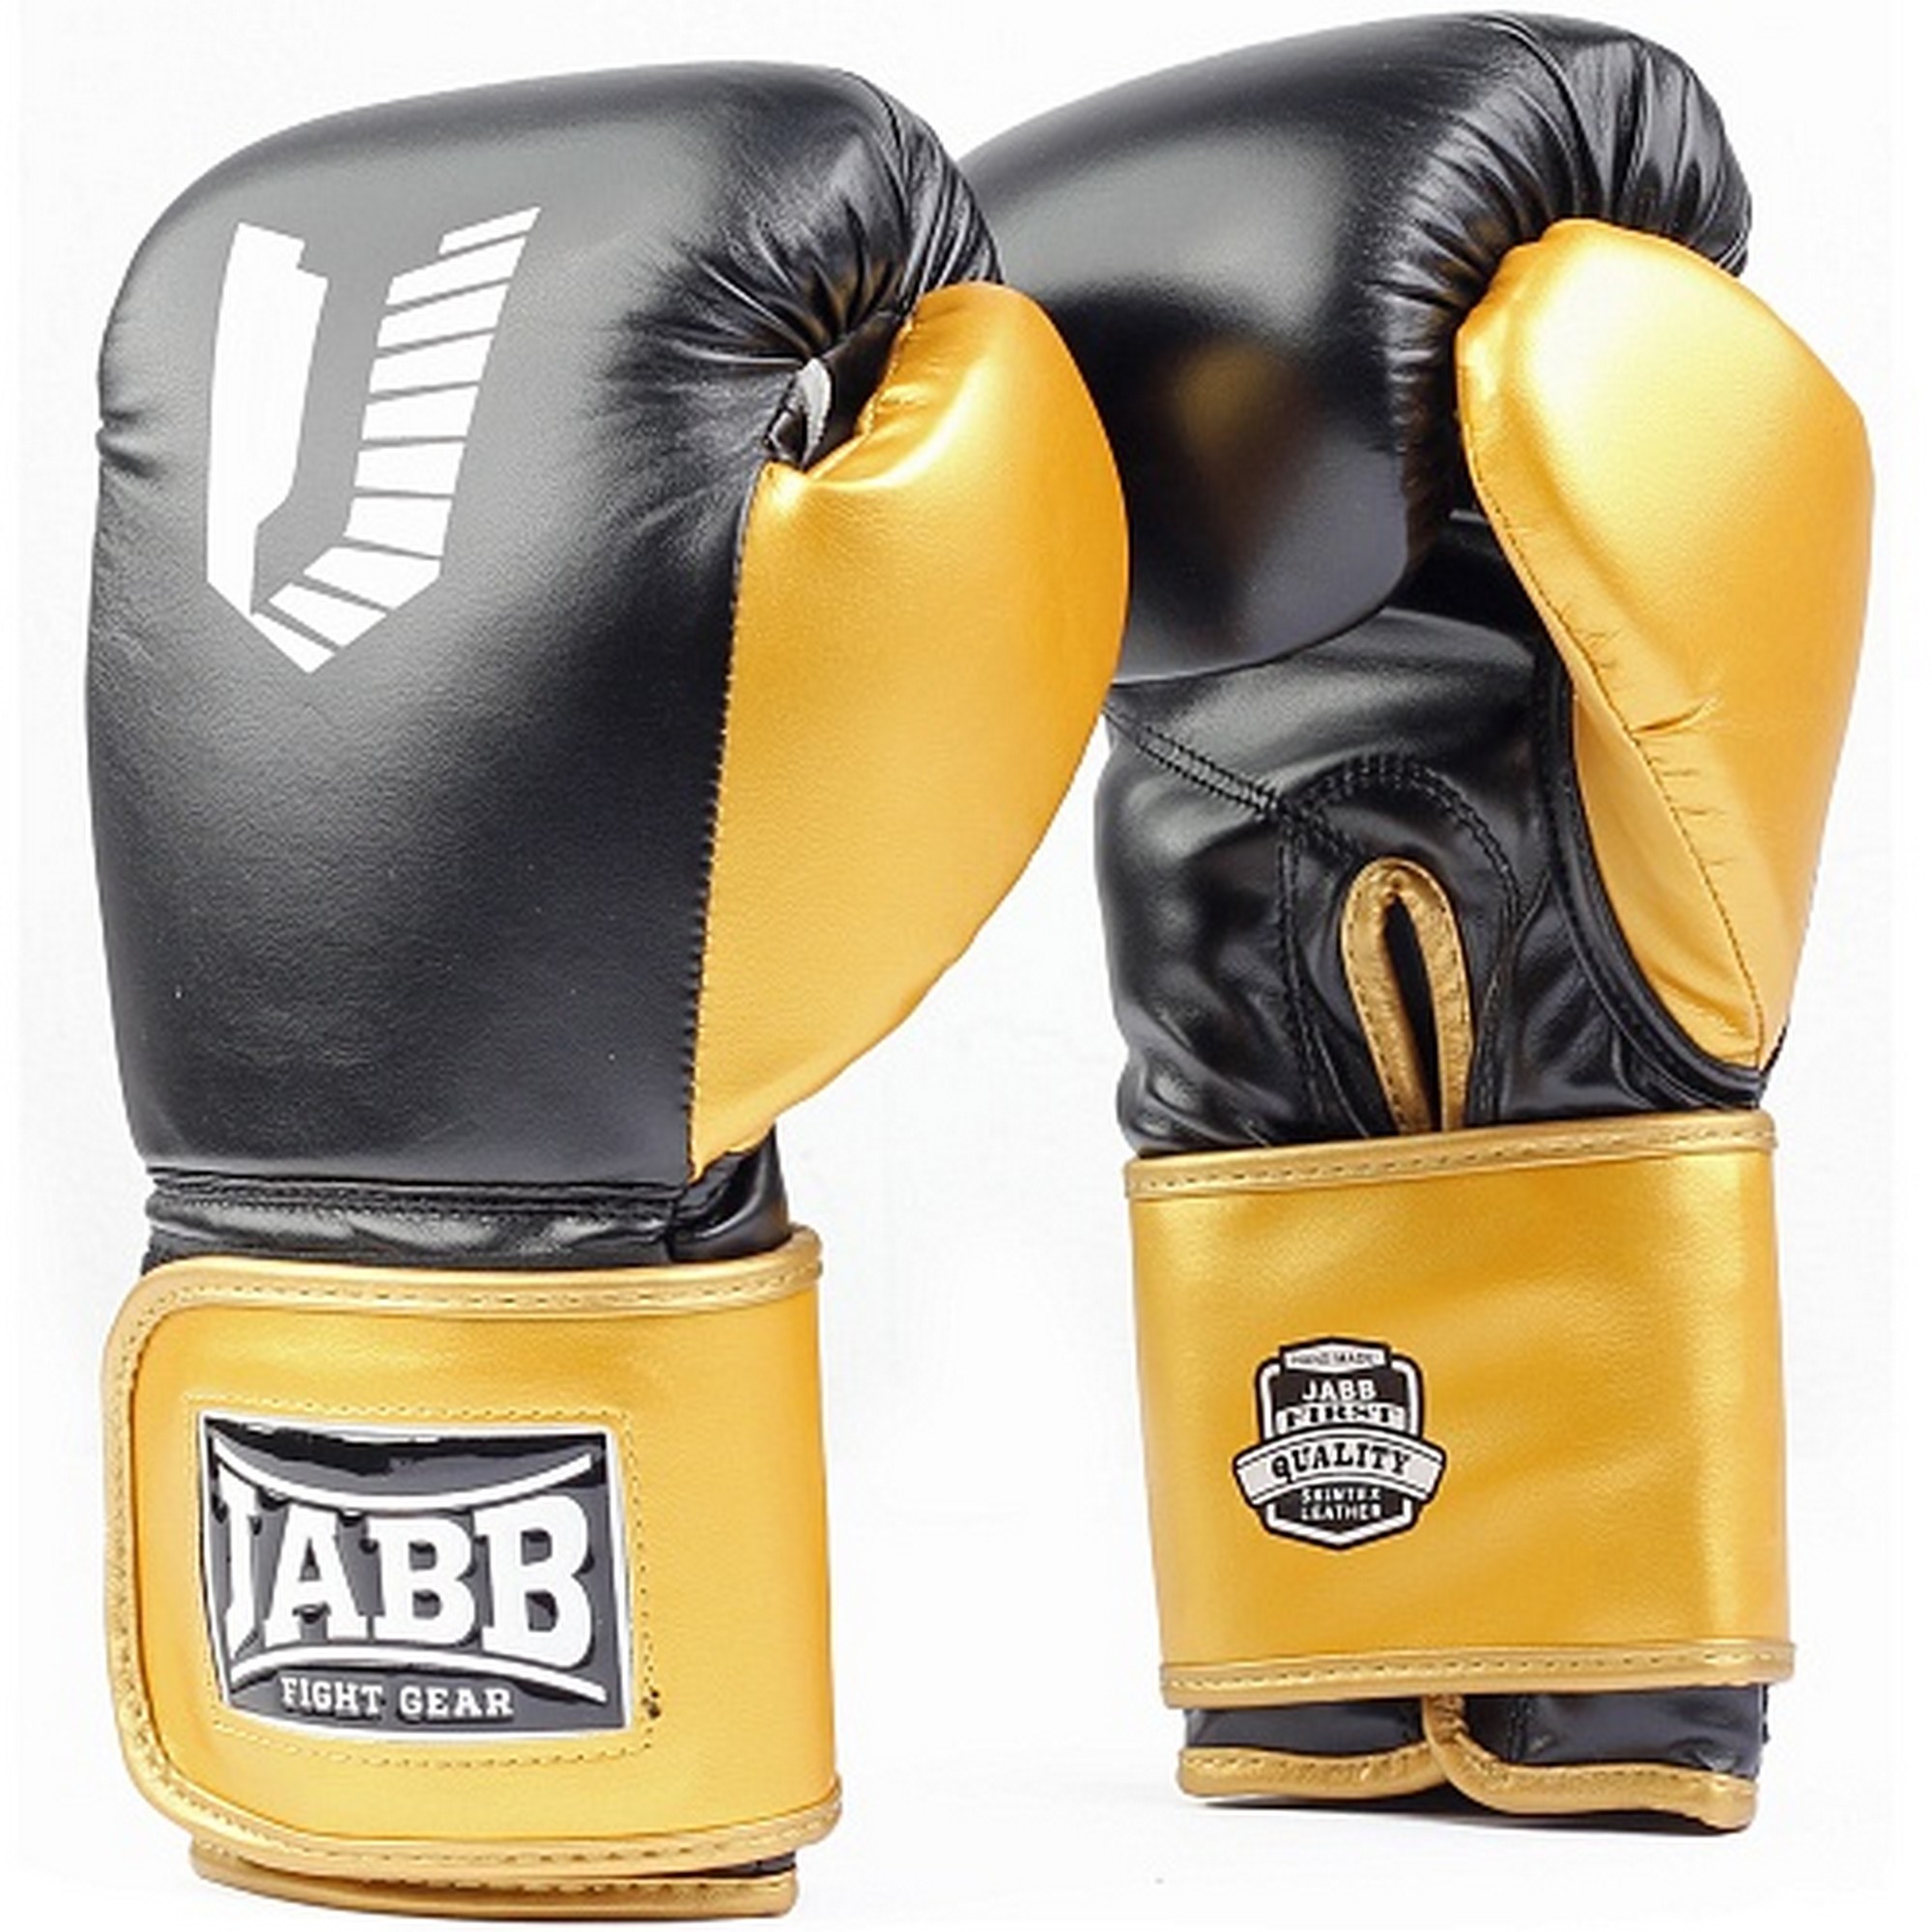 Купить Перчатки боксерские (иск.кожа) 10ун Jabb JE-4081/US Ring черныйзолото,